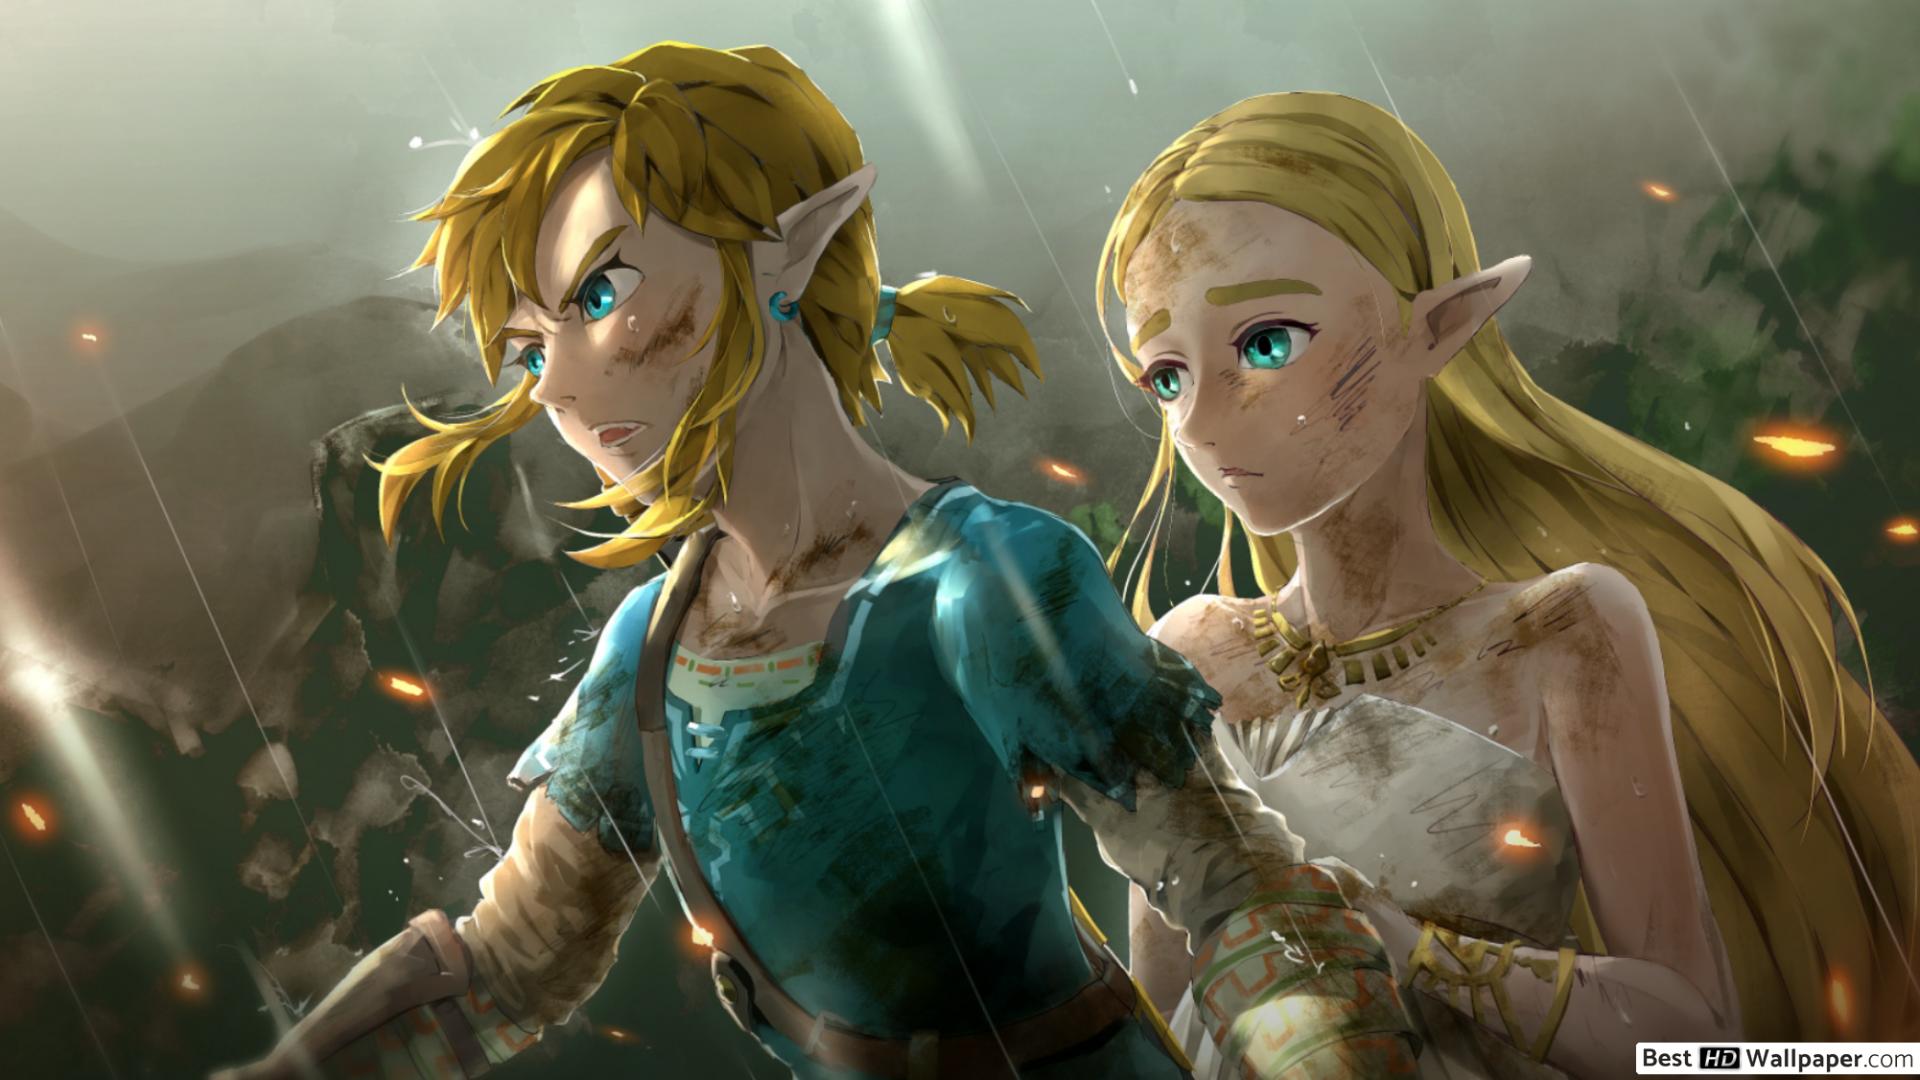 Link Zelda Fant Art HD The Legend of Zelda Breath of the Wild Wallpapers, HD Wallpapers